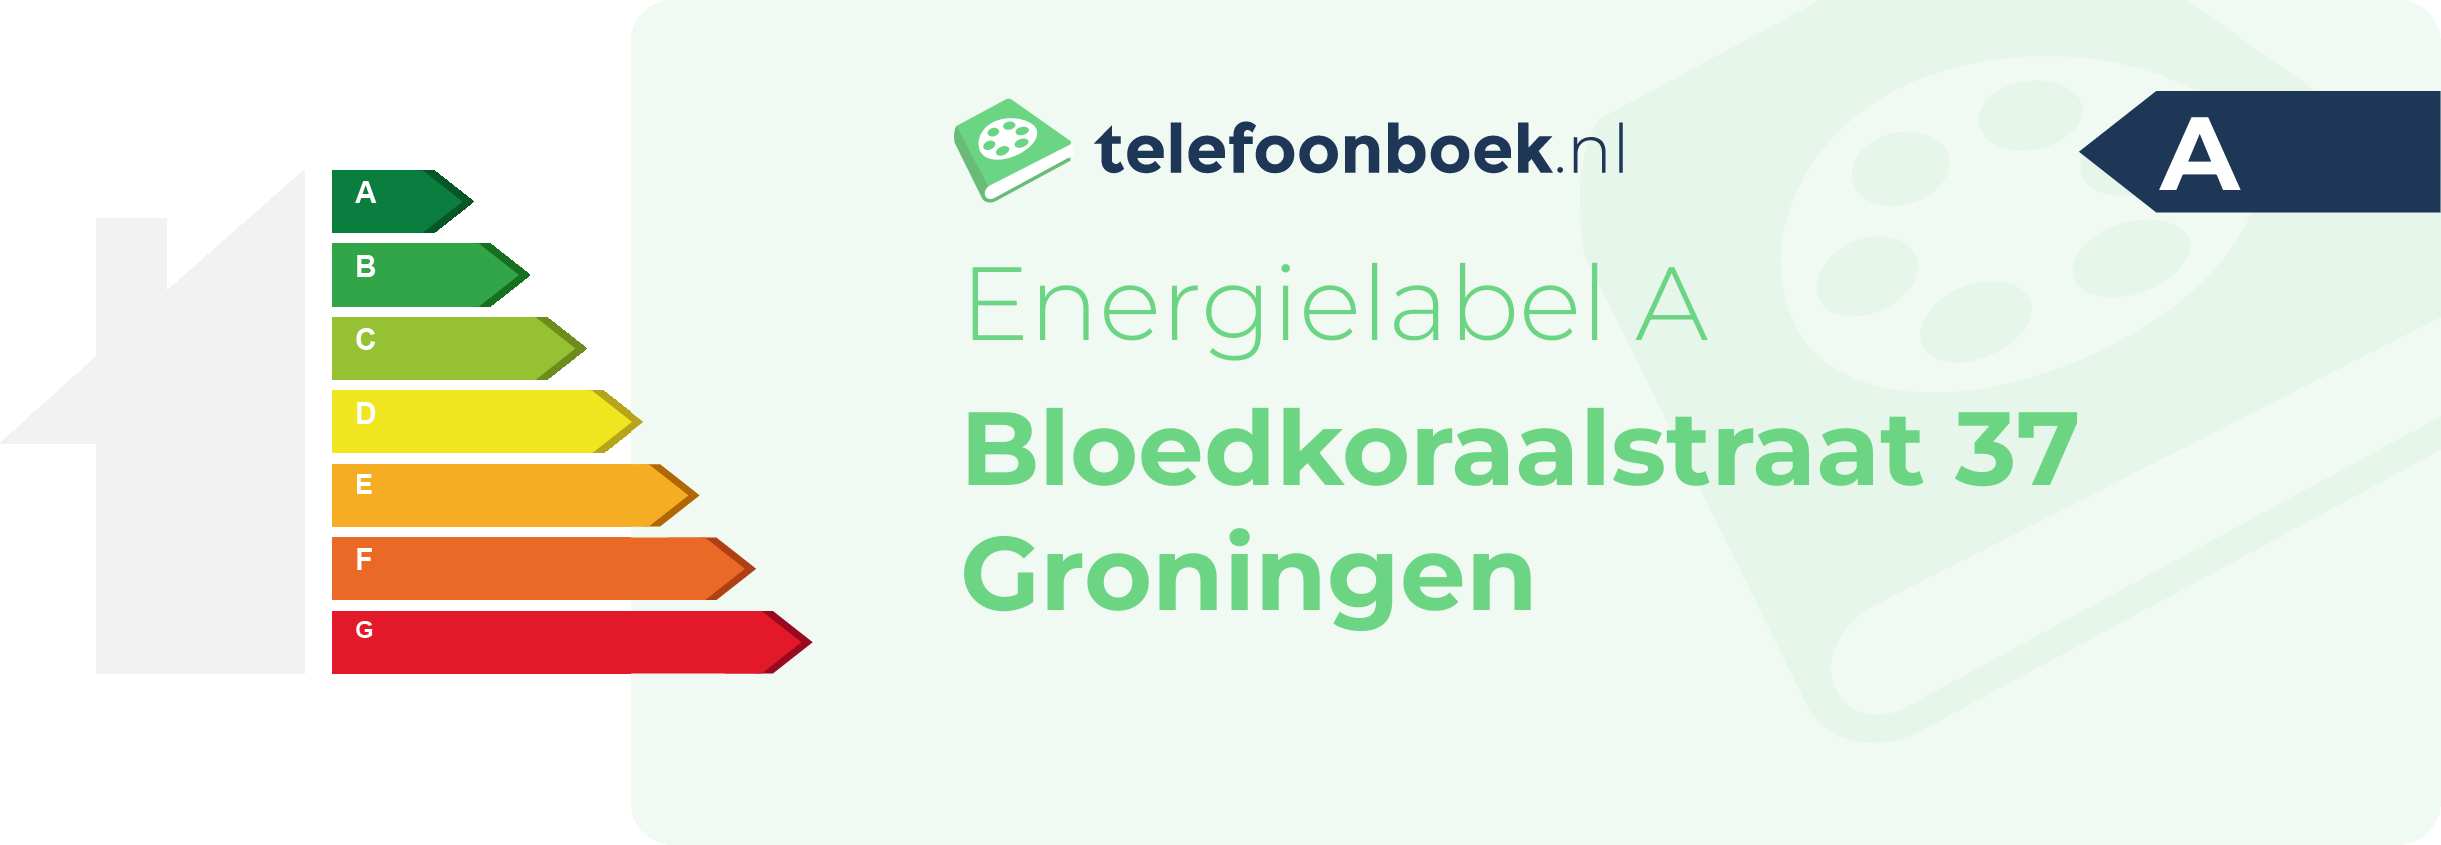 Energielabel Bloedkoraalstraat 37 Groningen